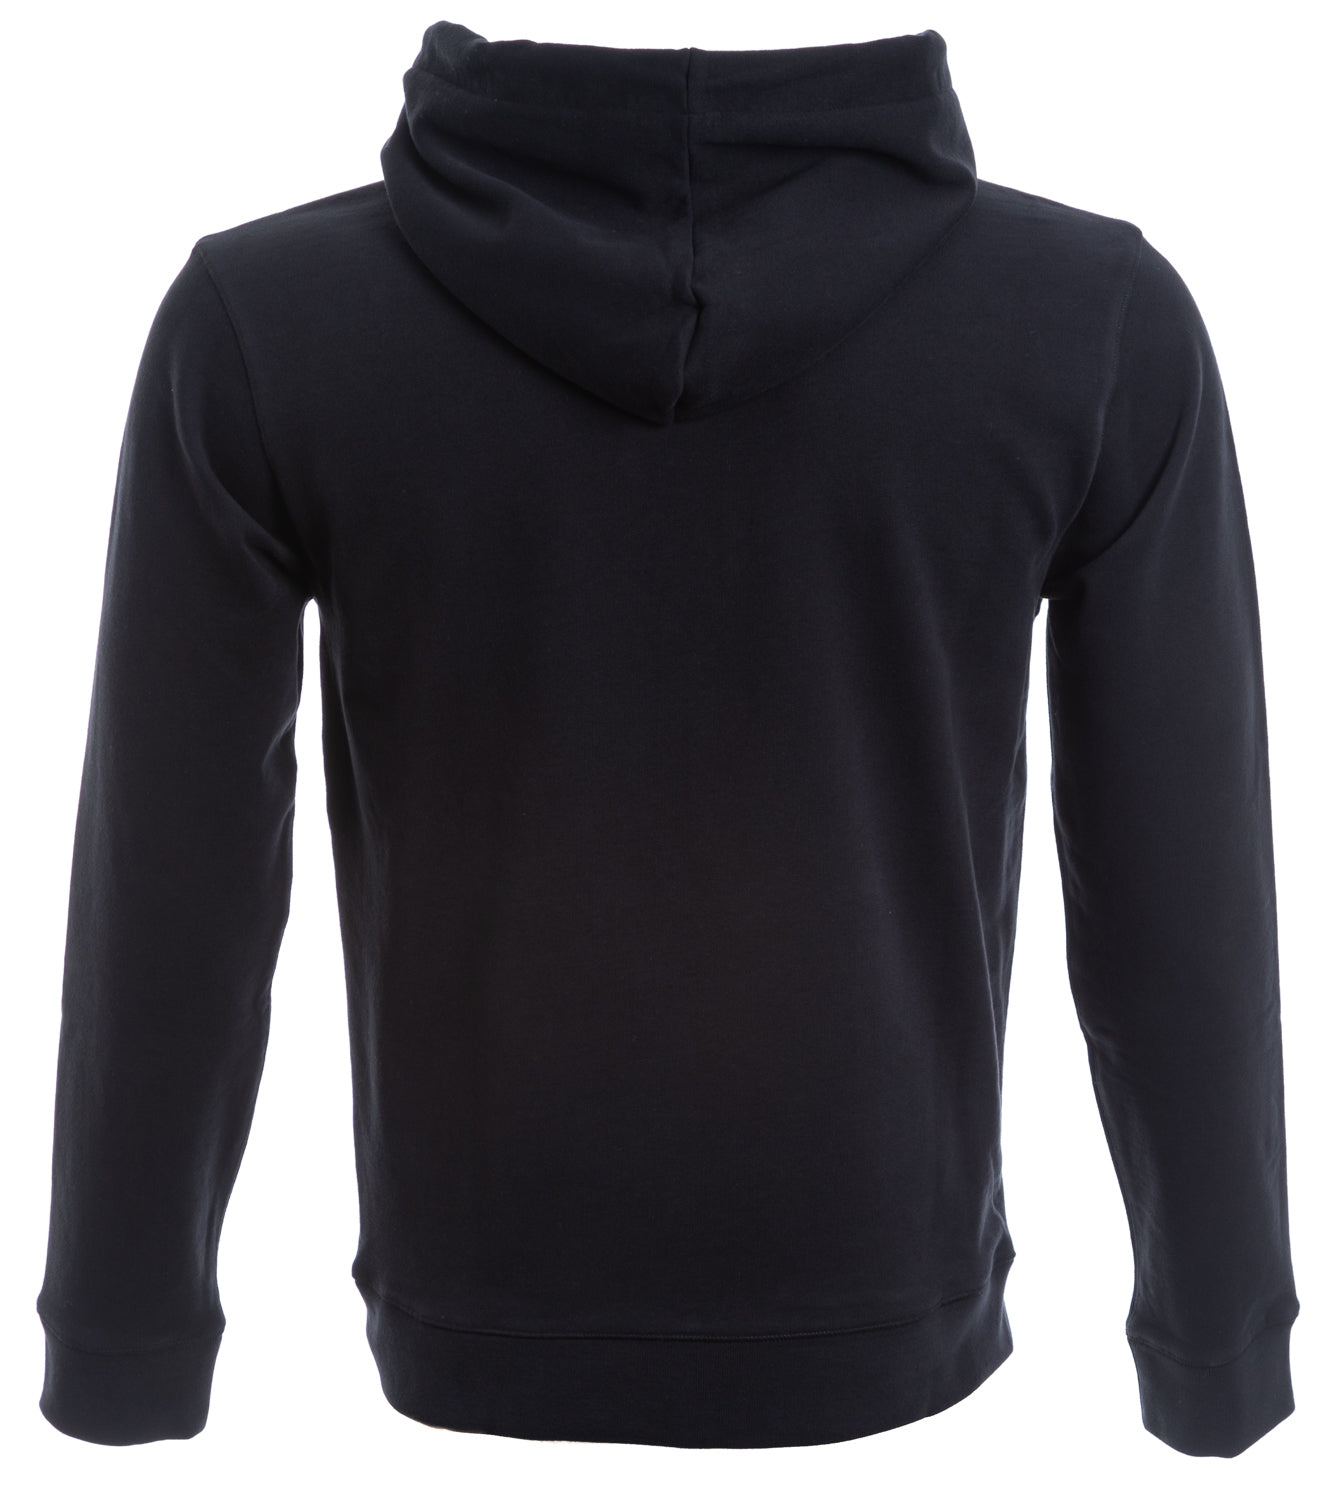 BOSS Weedo 2 Hooded Sweatshirt in Black